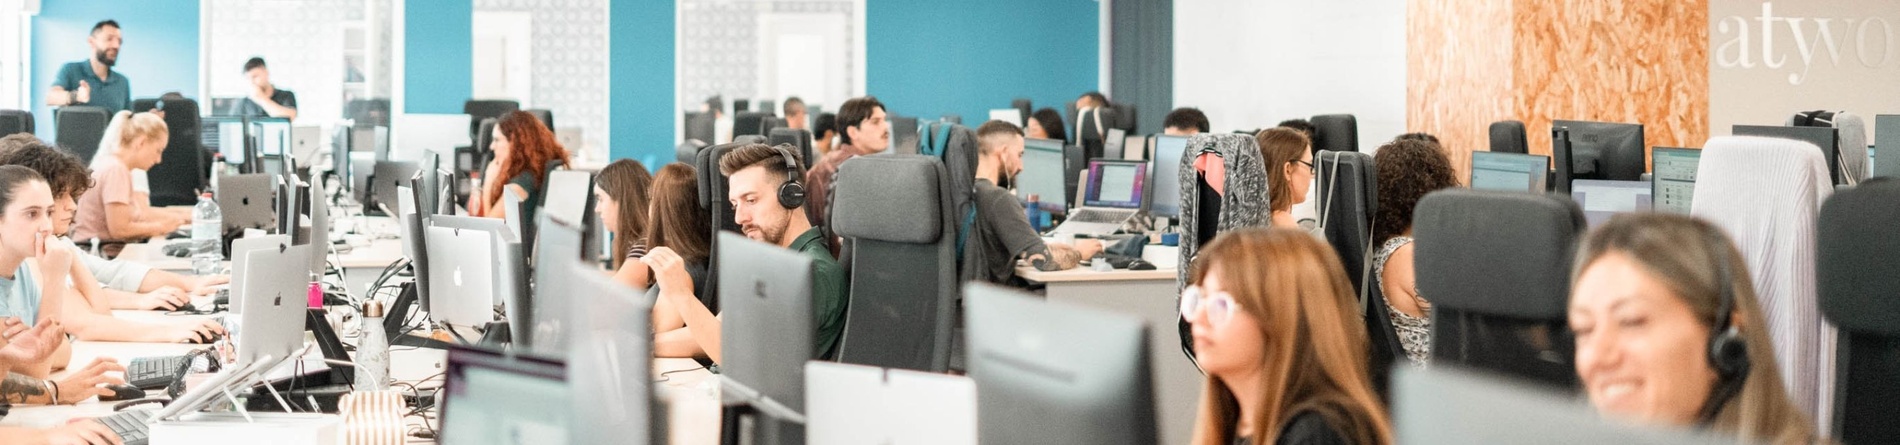 un grupo de personas trabajando en computadoras en una oficina